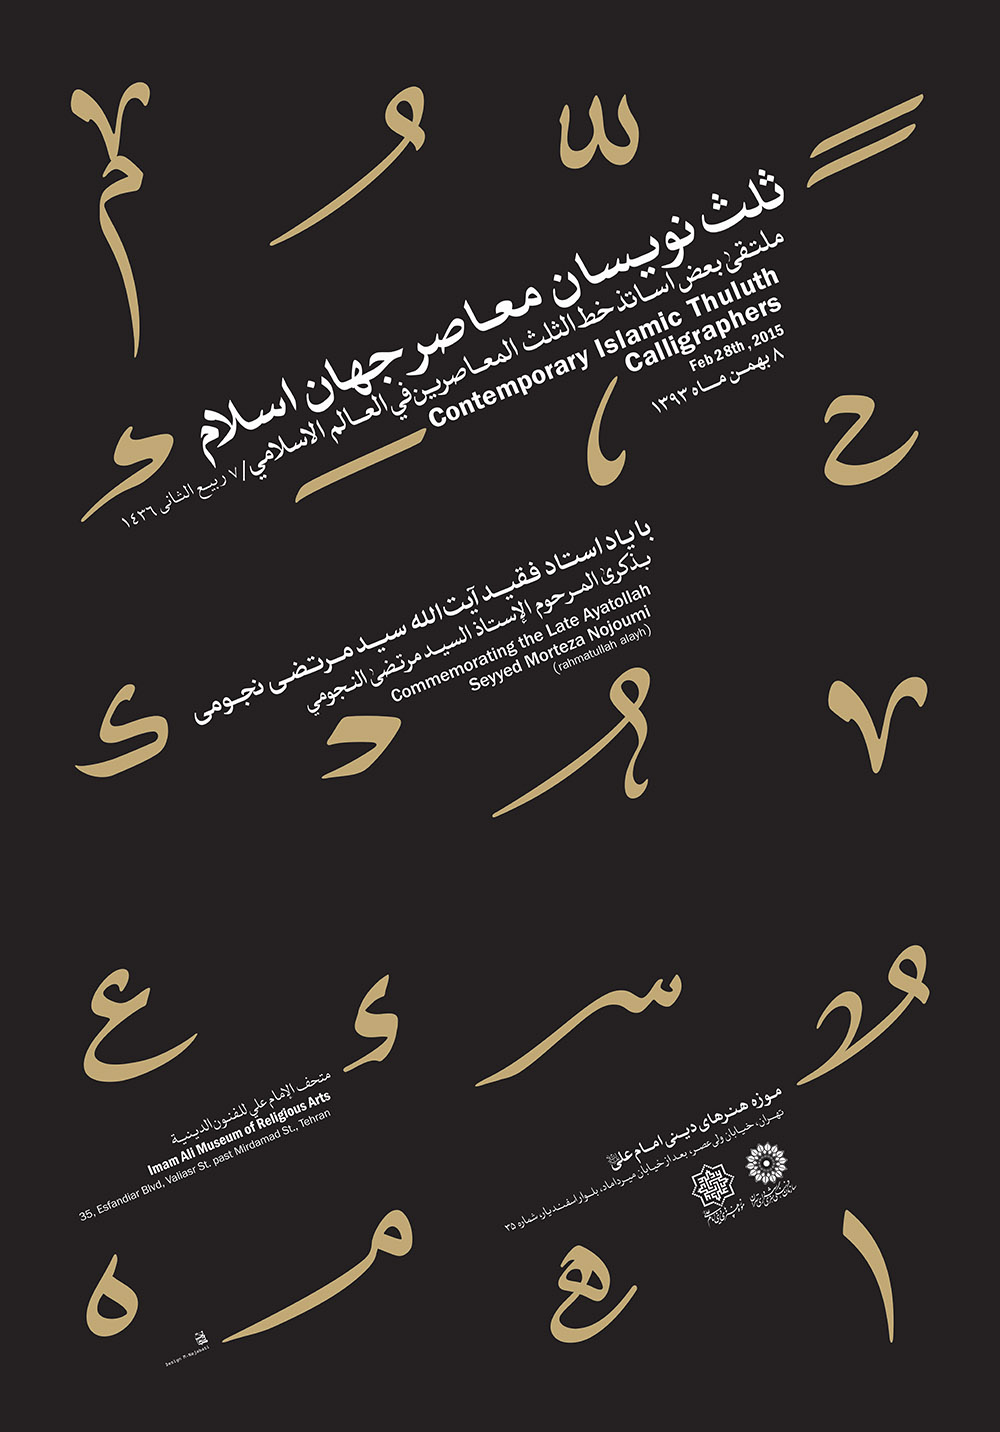 مسعود نجایتی - پوستر نمایشگاه ثلث نویسان معاصر جهان اسلام